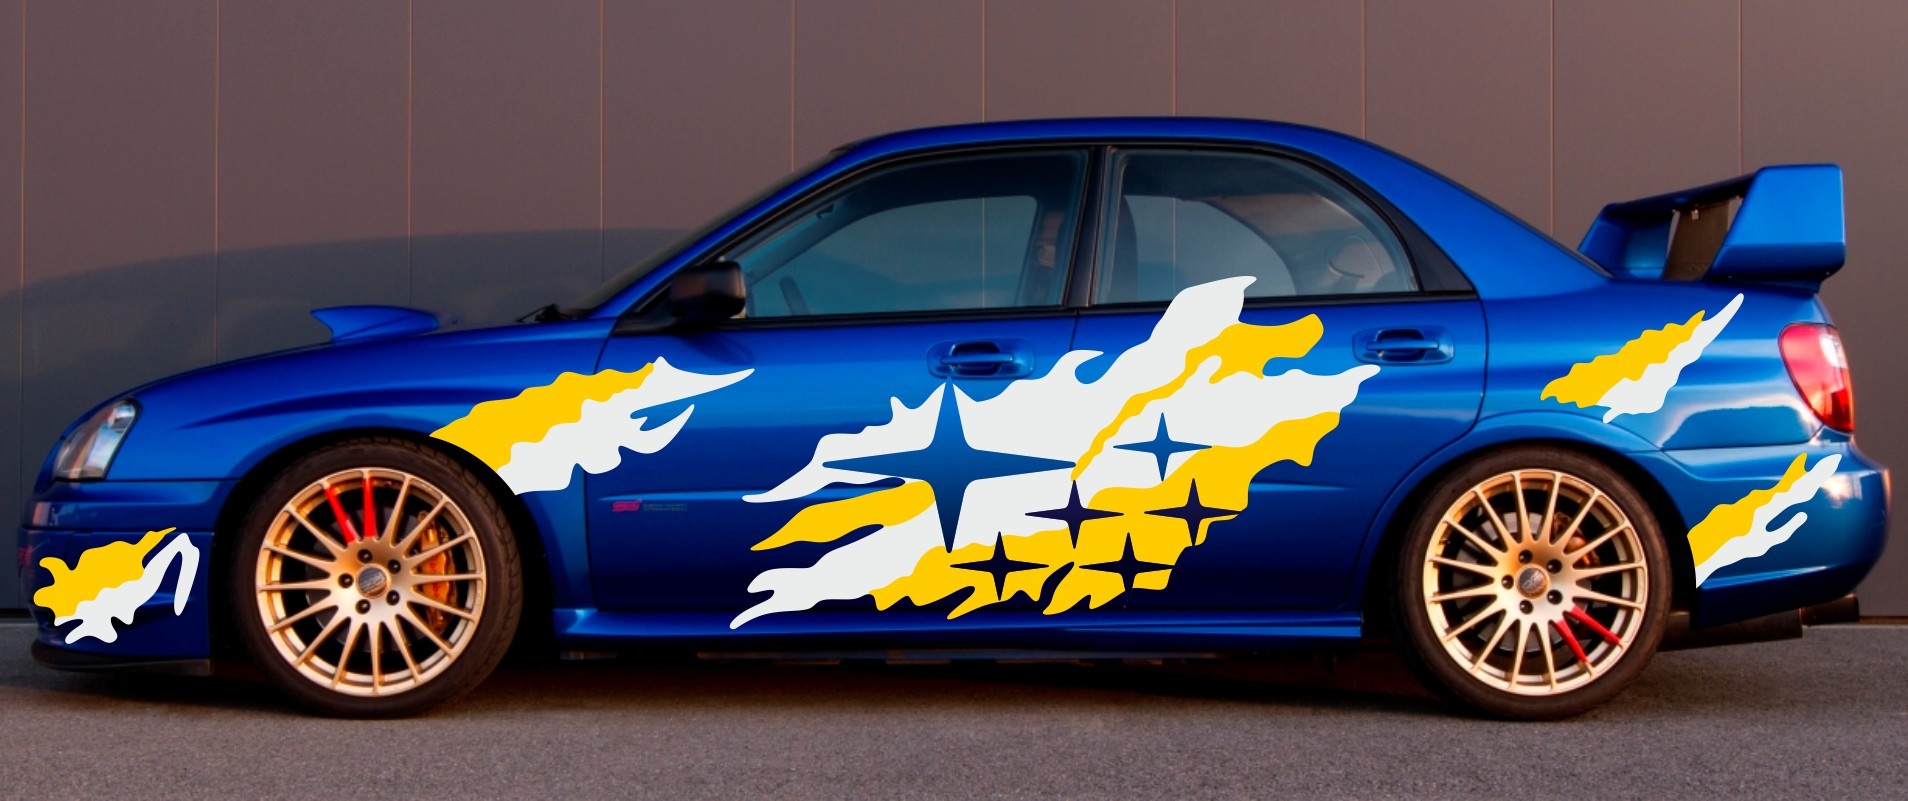 Naklejki Subaru Impreza WRC STI rajdowe raily aufkleber sticker decals